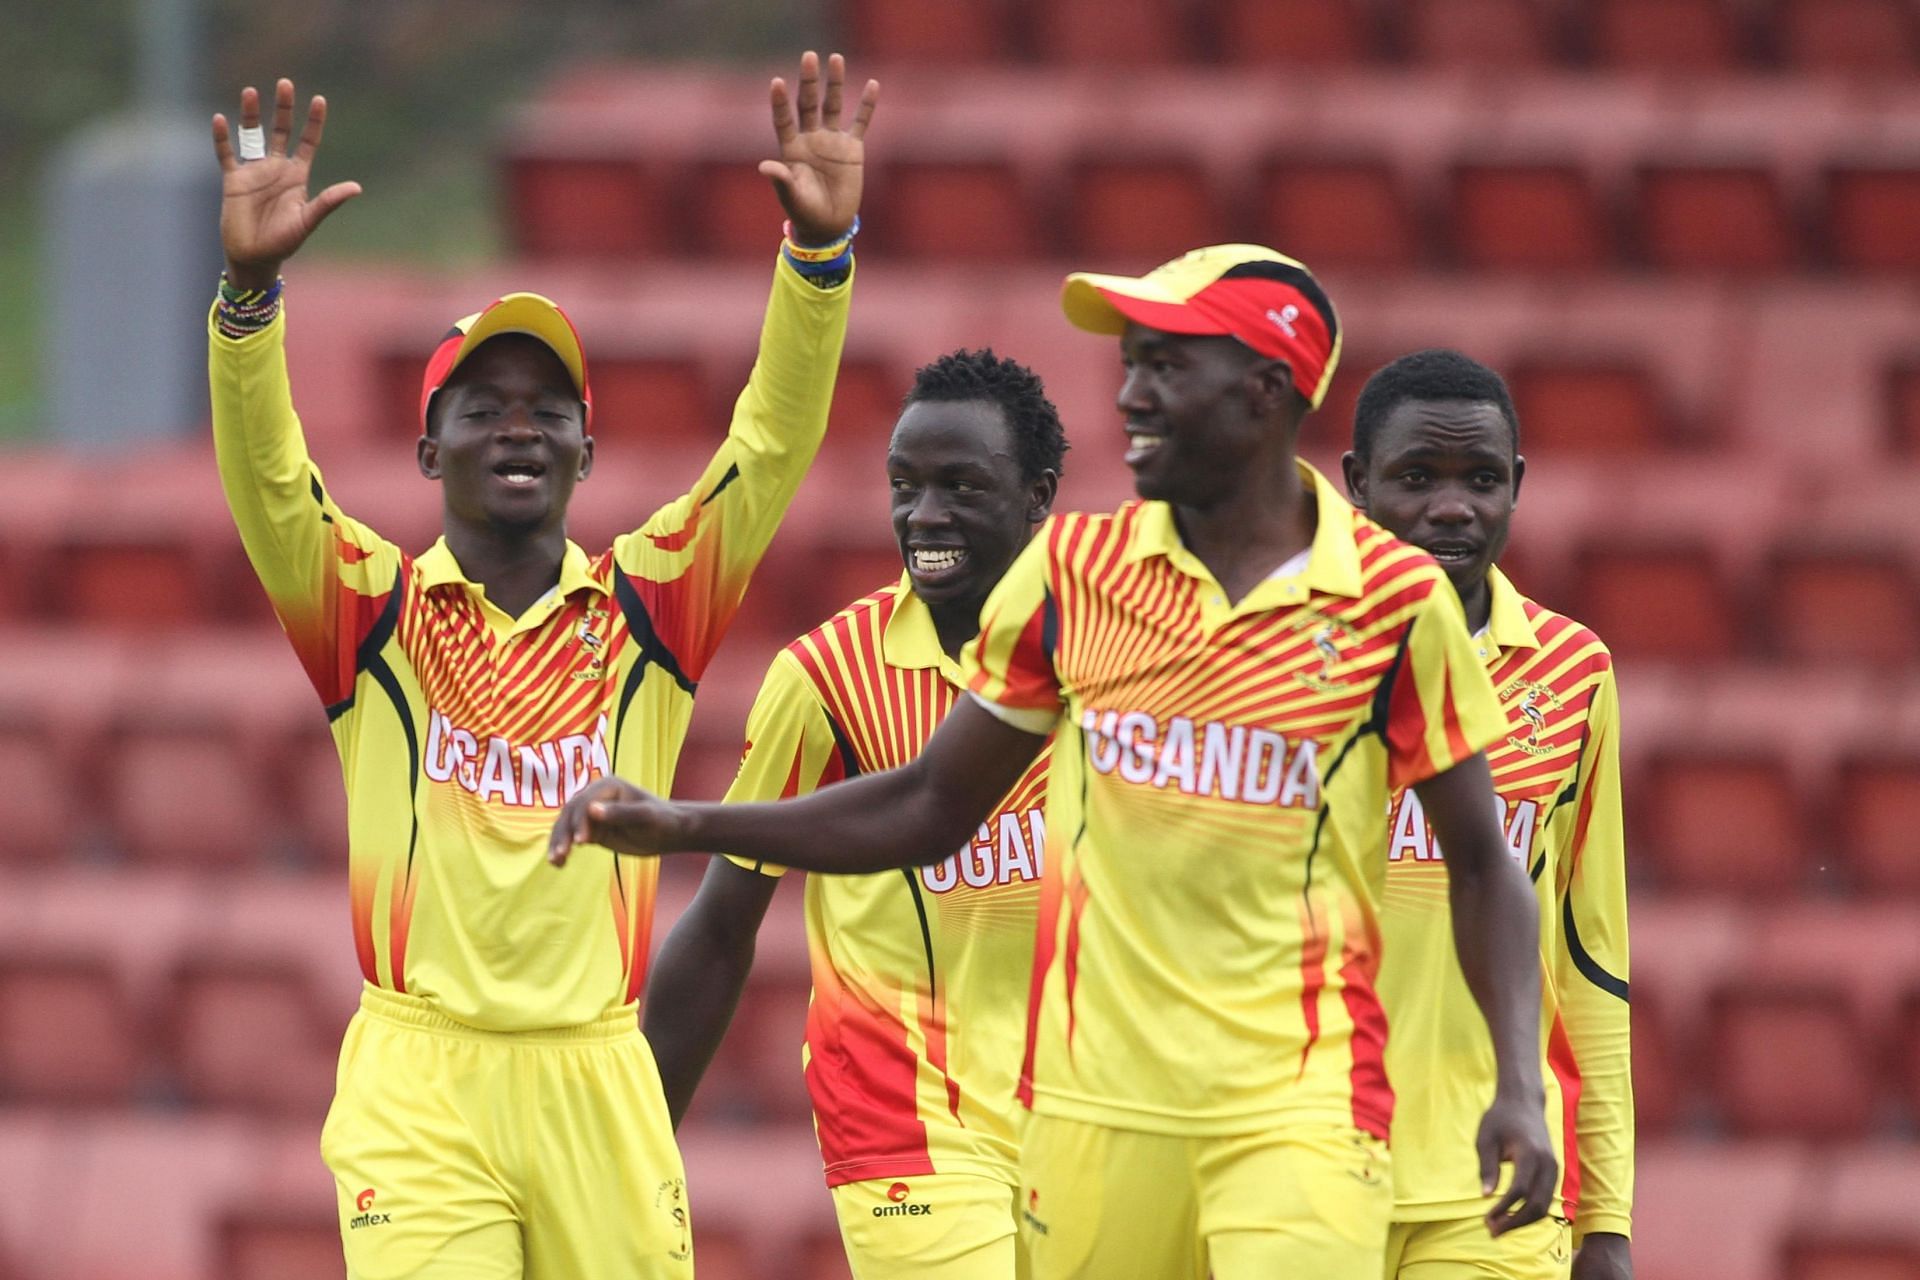 Uganda Cricket Team Players - Image Courtesy: ICC Cricket